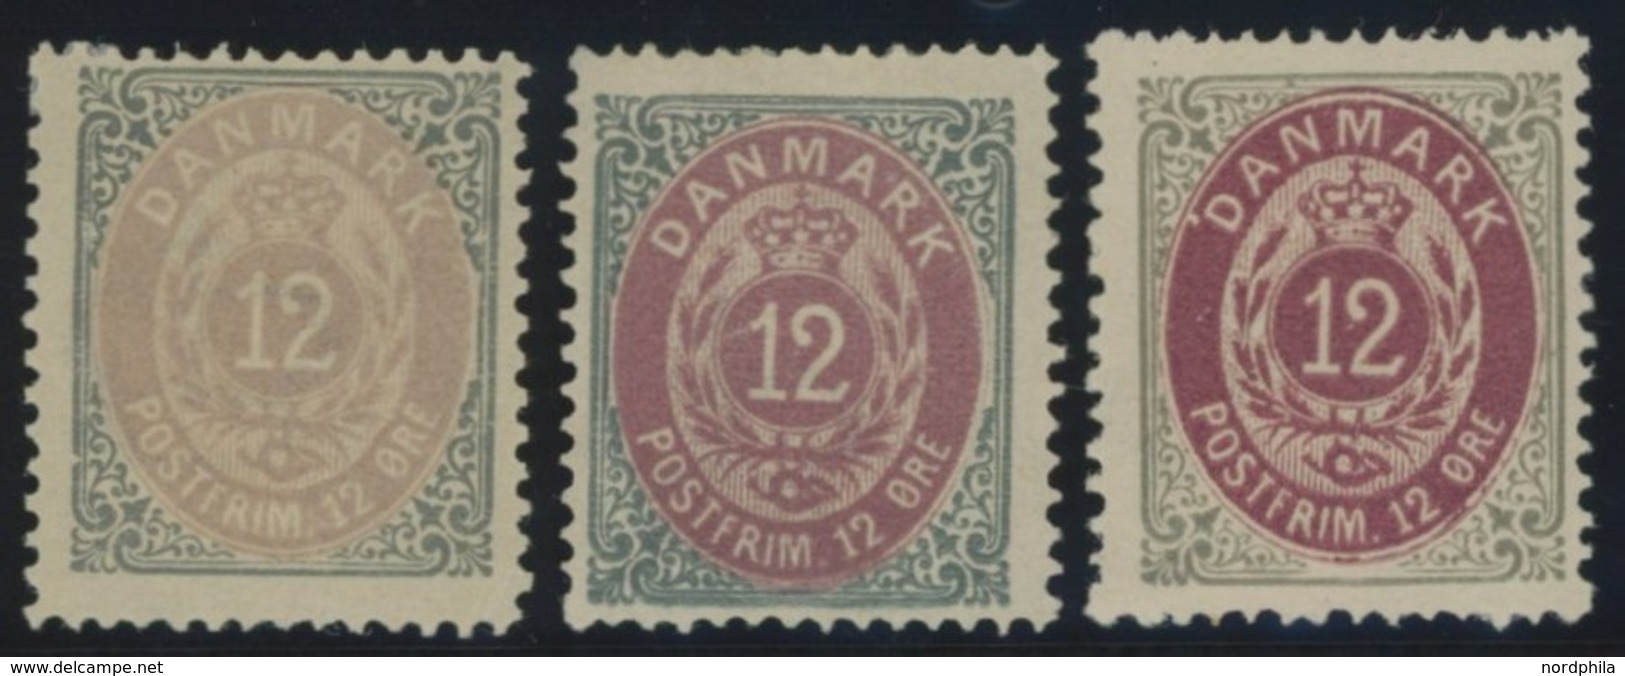 DÄNEMARK 27IYA *, 1875, 16 Ø Grau/braun, Gezähnt K 14:131/2, 3 Verschiedene Auflagen, Falzrest, Pracht - Usado